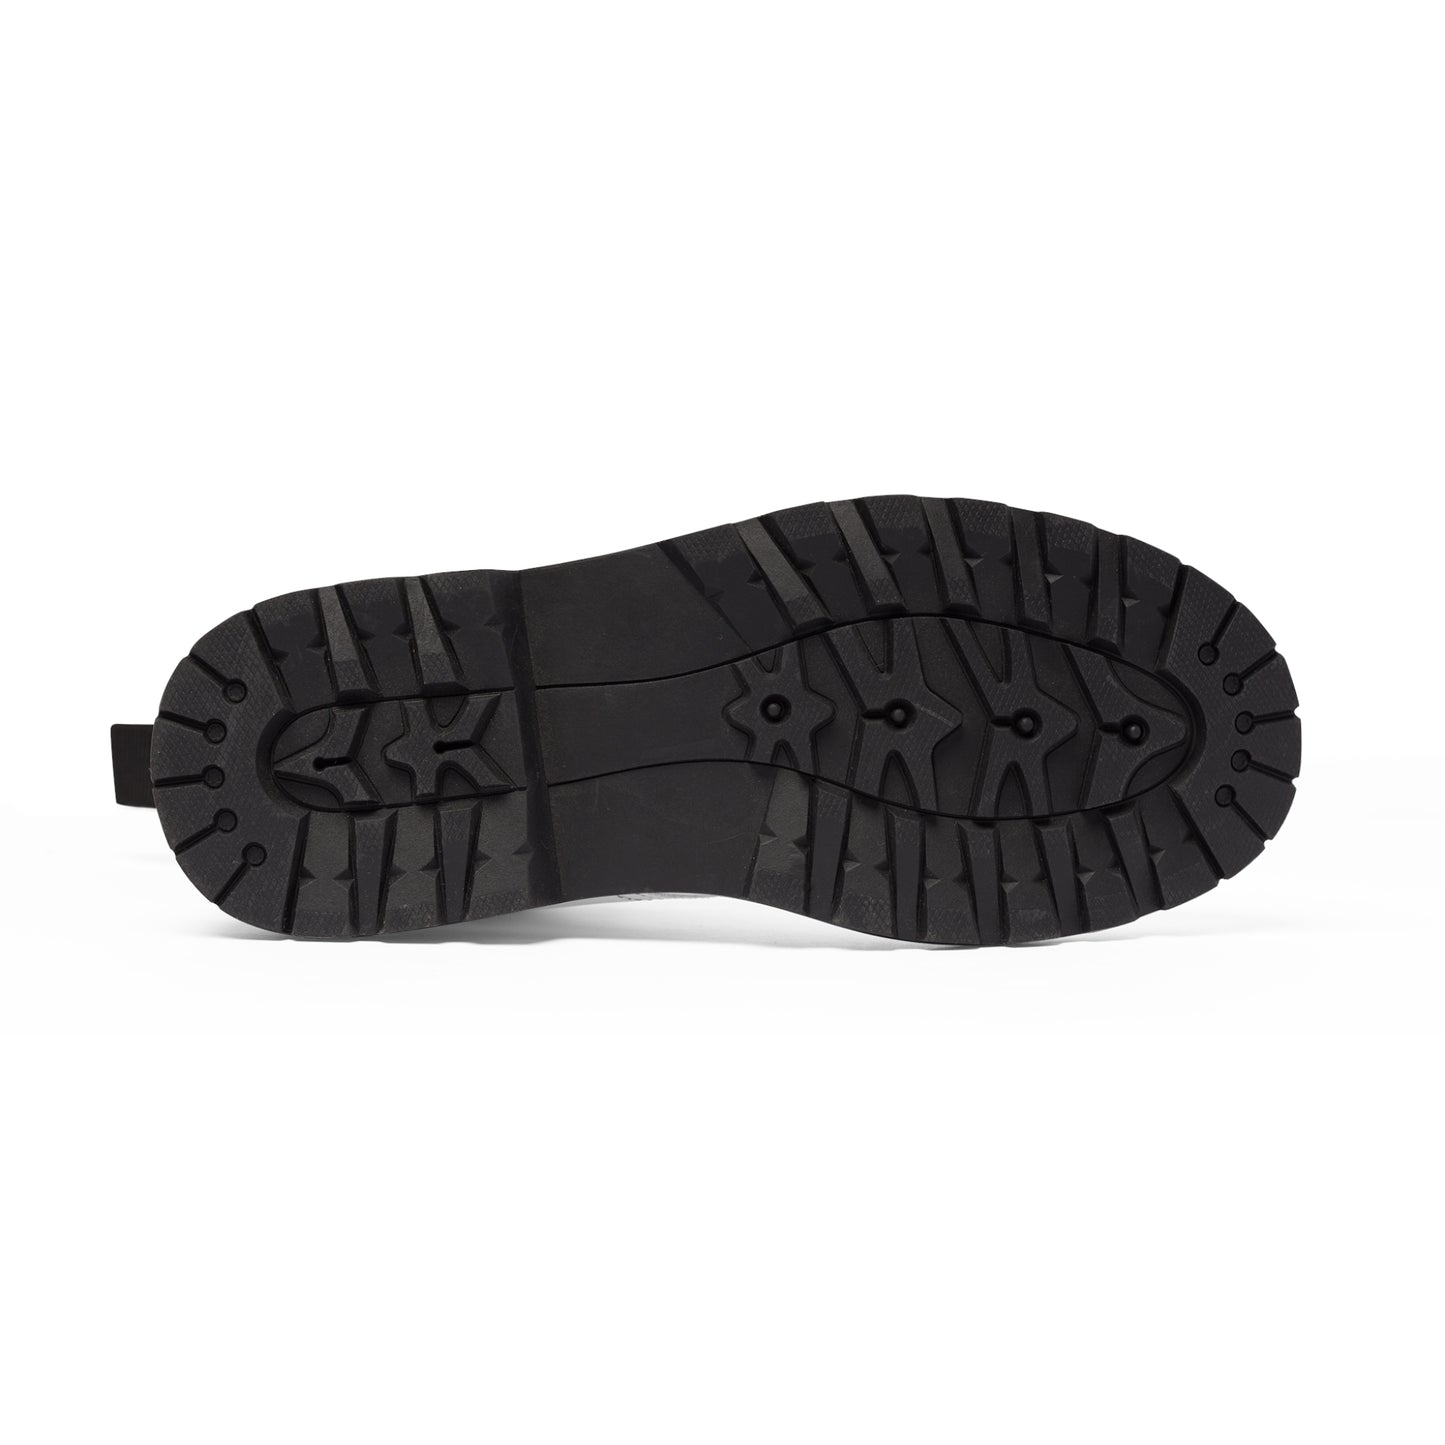 Men's Canvas Boots - Light Moss US 10.5 Black sole